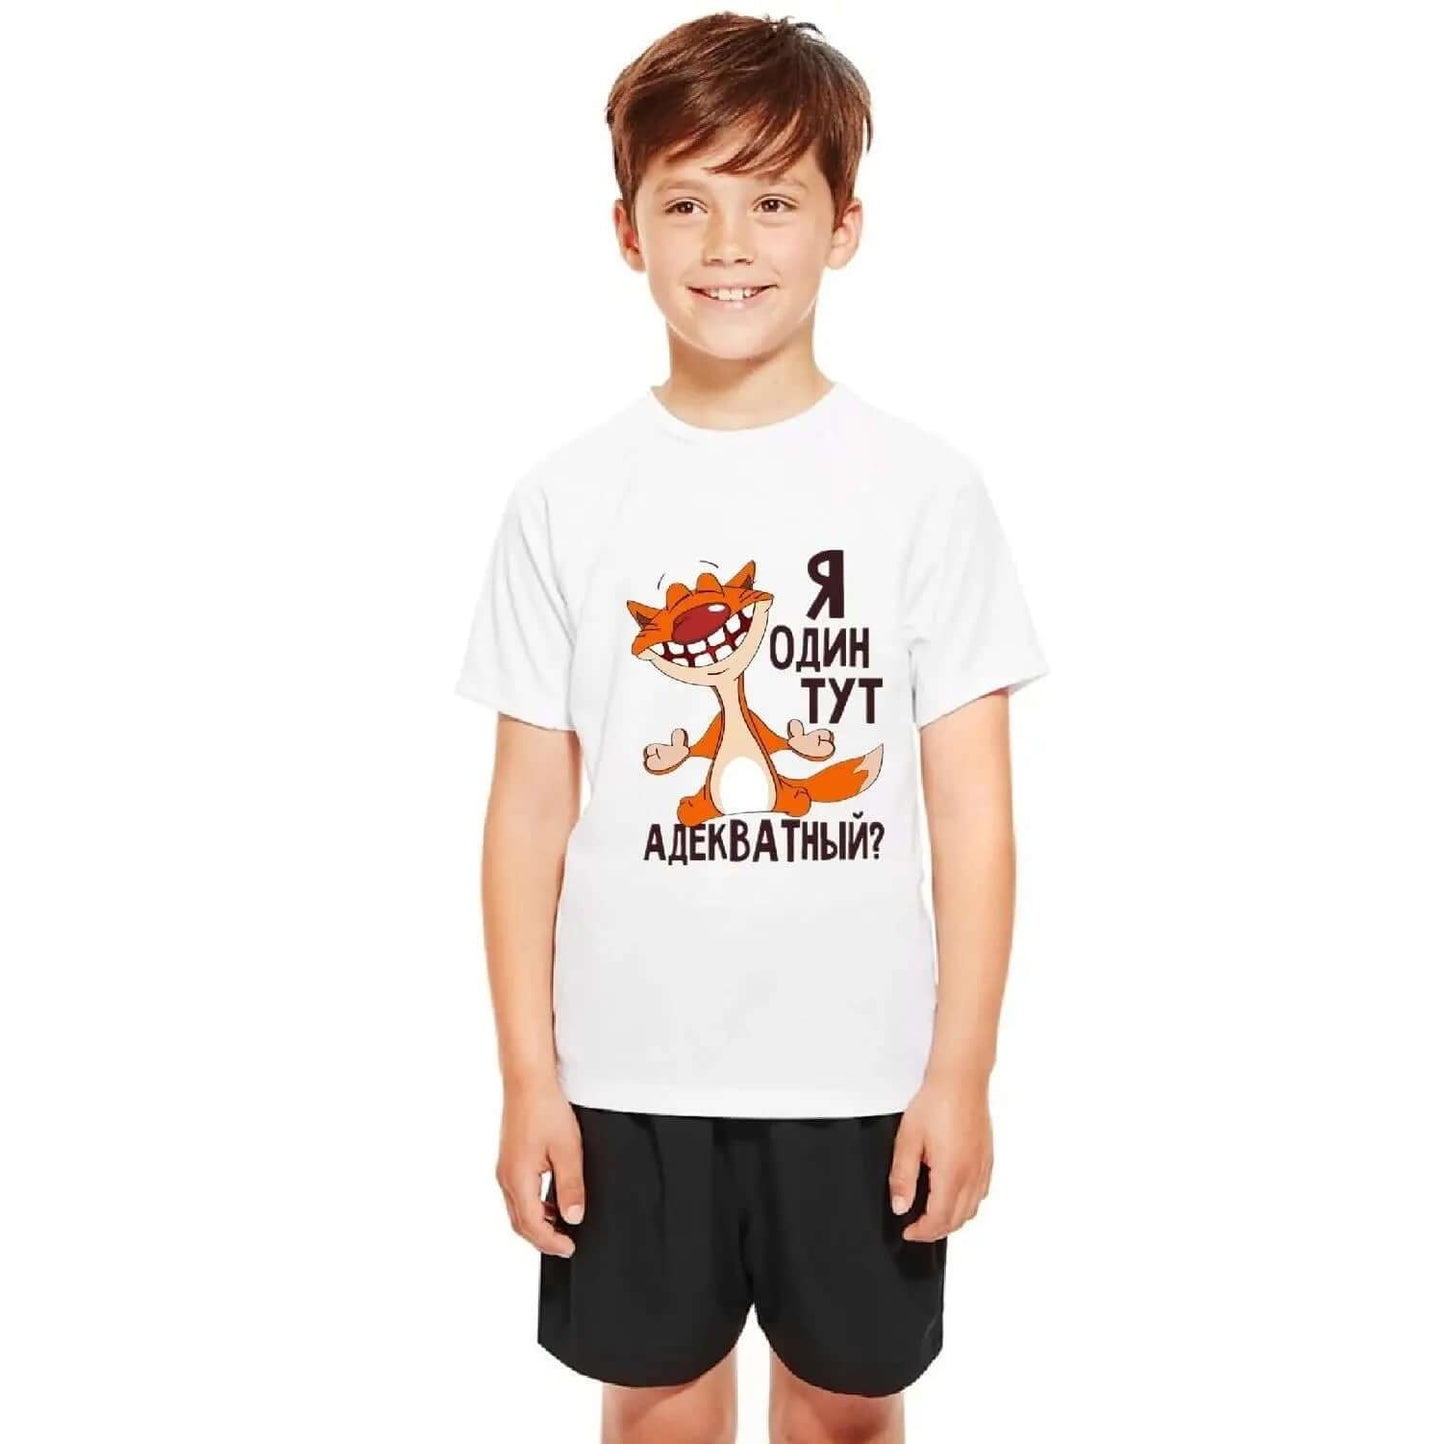 Children's T-Shirt Kid's Gift Short Sleeve100% Cotton Summer - ARCHE